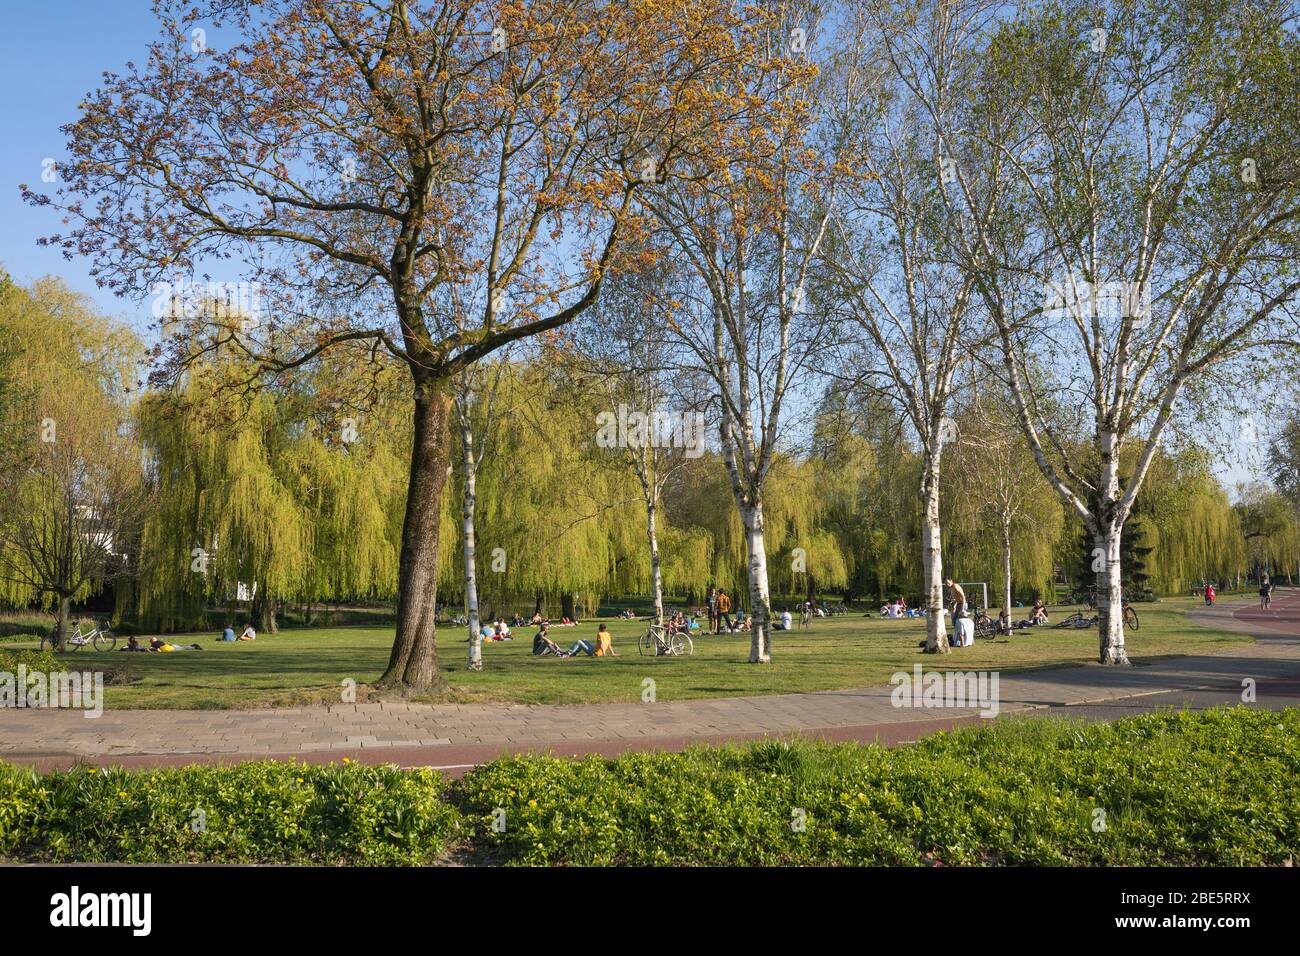 Persone che godono di una giornata di sole in un parco cittadino che soggiornano a una distanza sociale sicura a causa della crisi di Corona, Eindhoven, Paesi Bassi Foto Stock